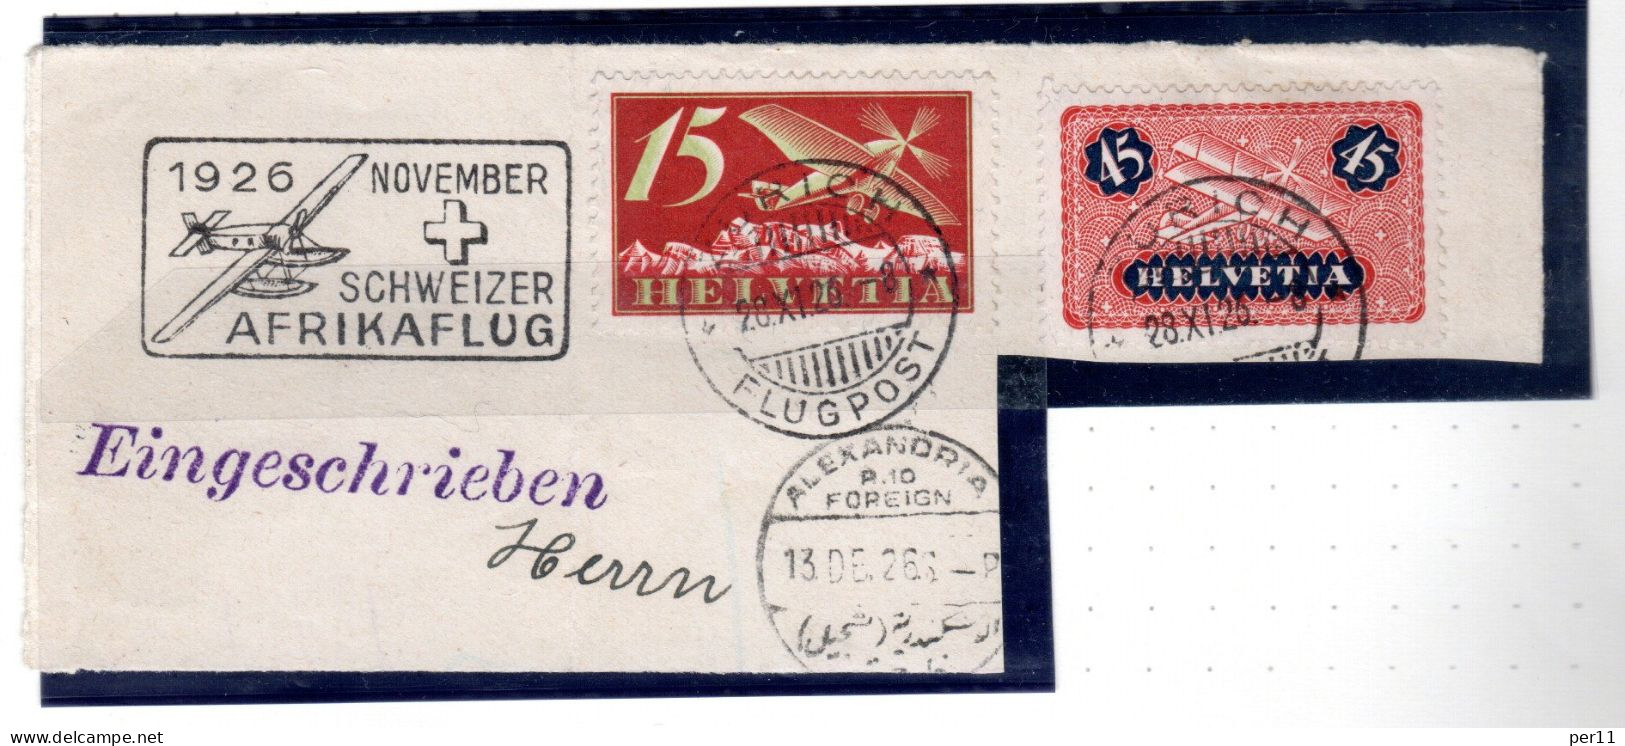 1926 November Afrikaflug , Part Of Registered Letter  (ch395) - Used Stamps